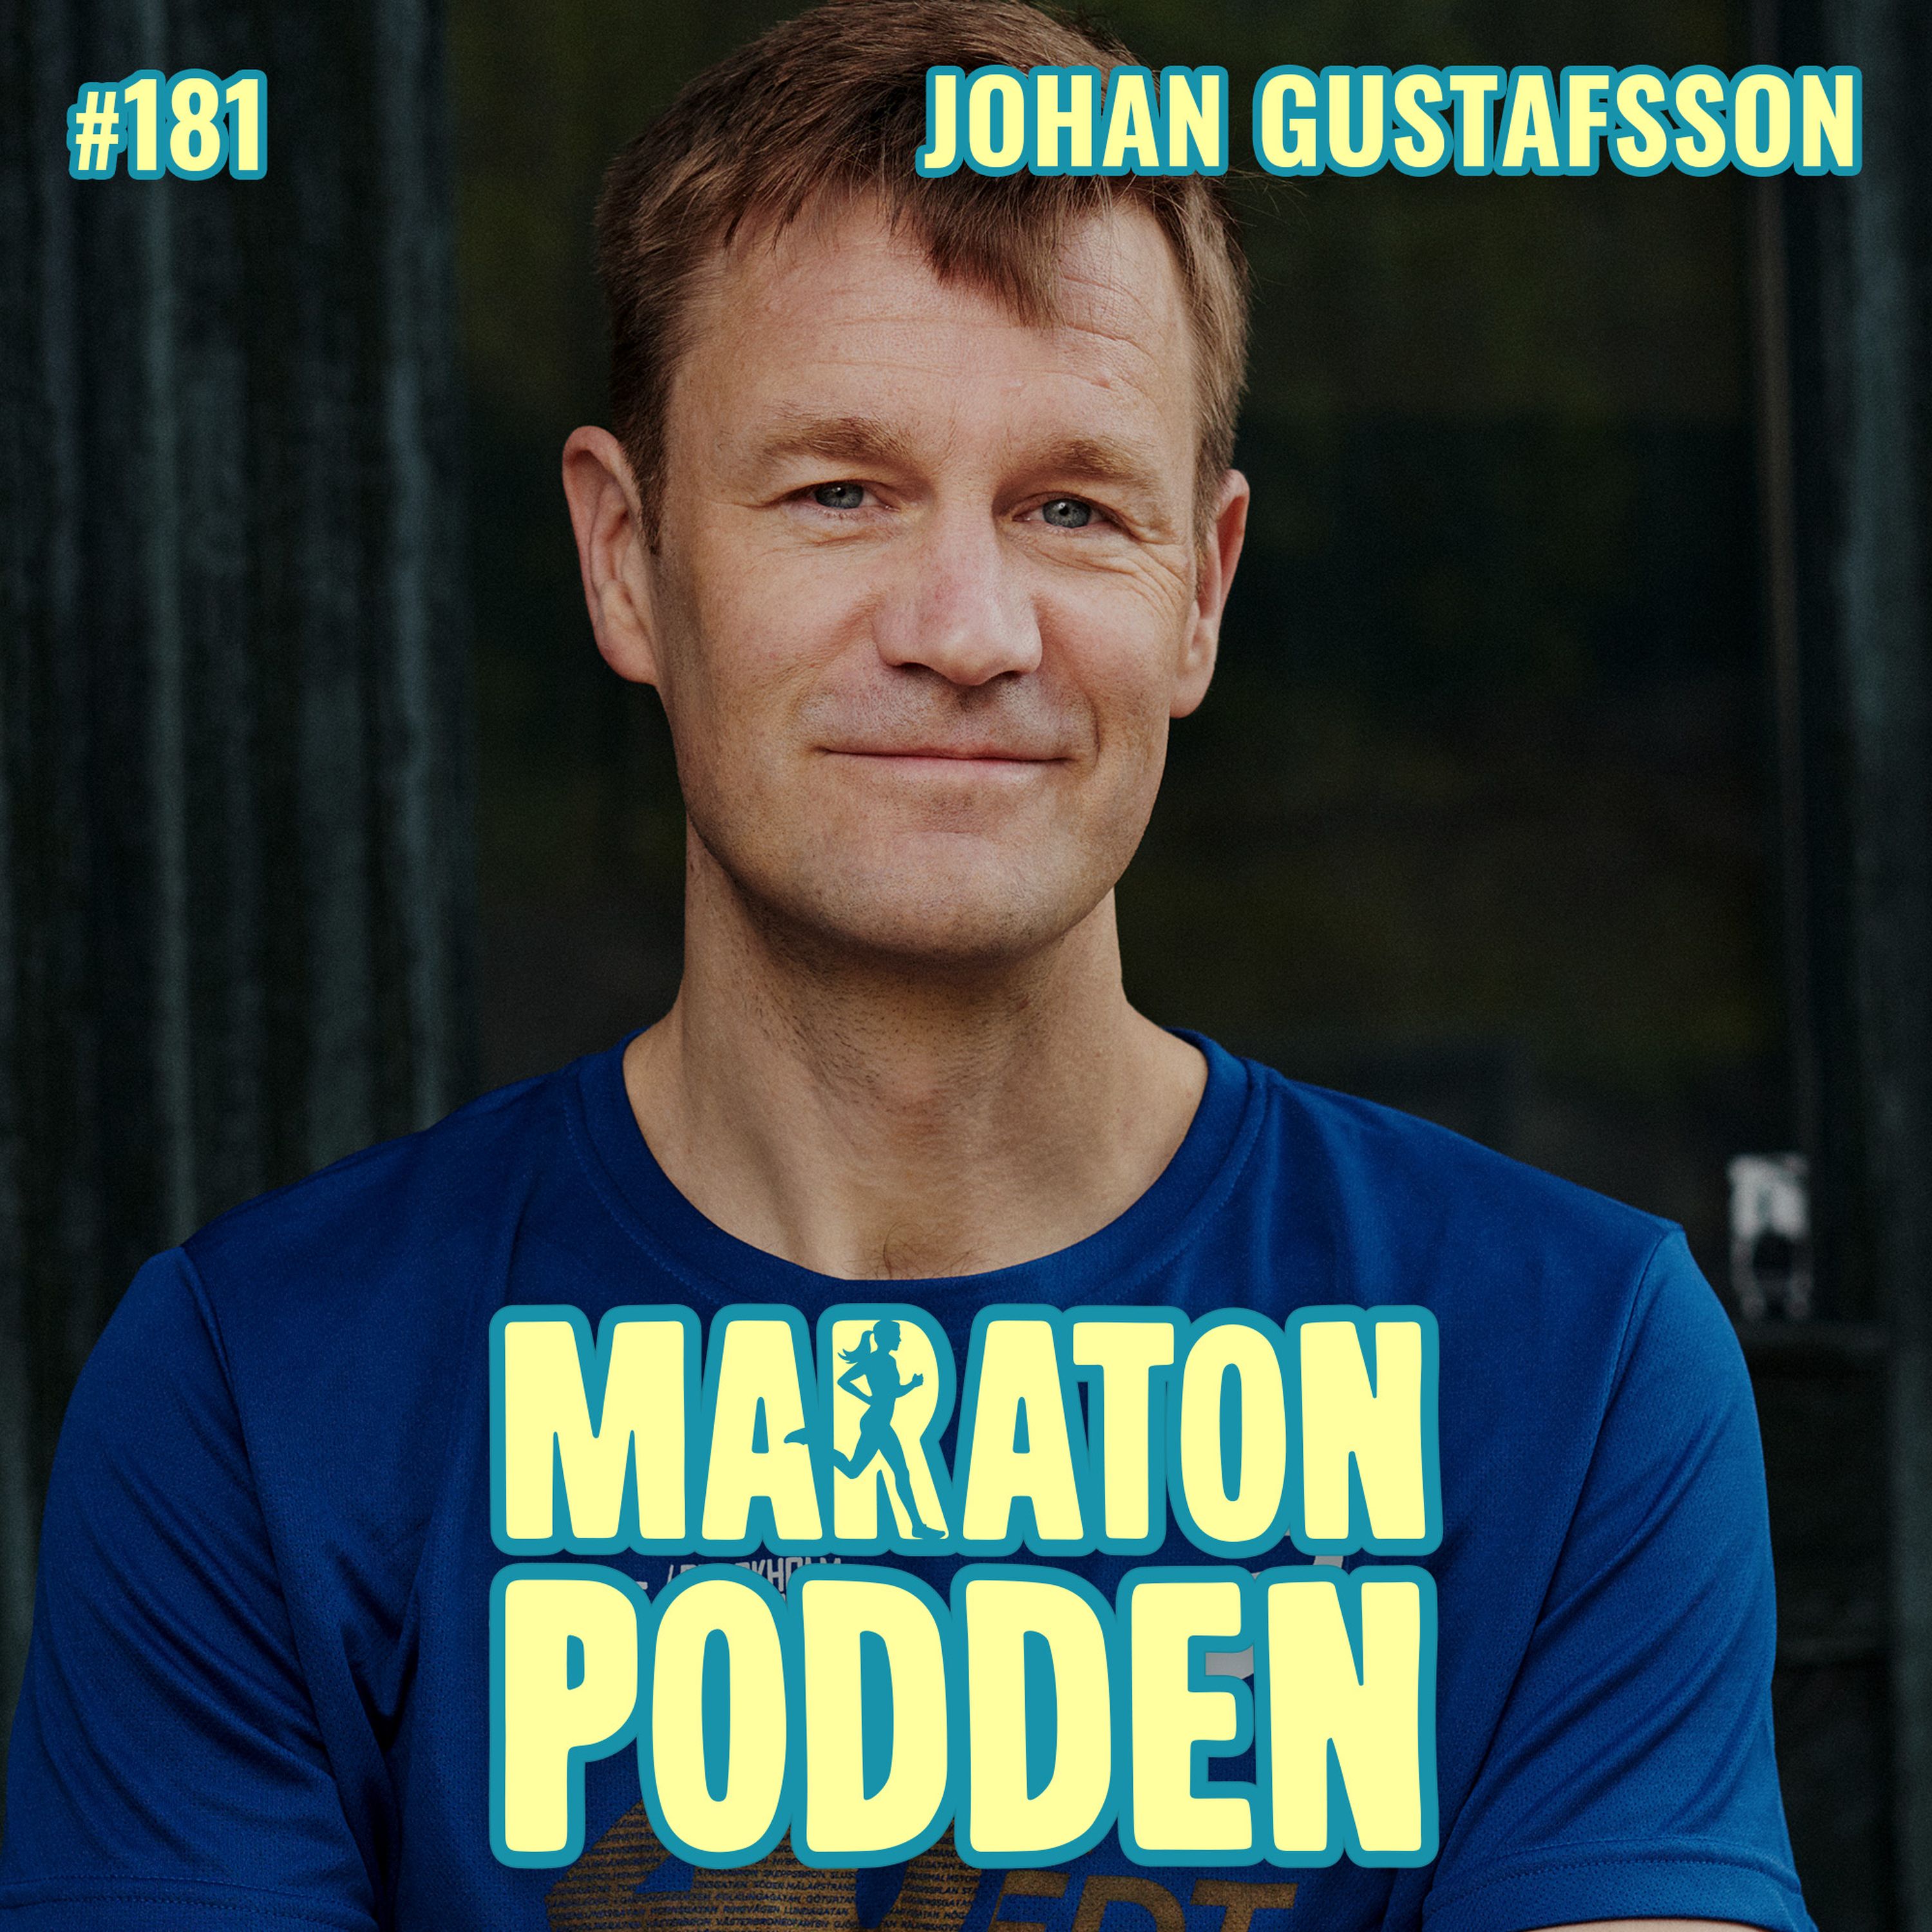 #181: Malisvensken Johan Gustafsson, träningen blev livlinan under fångenskapen